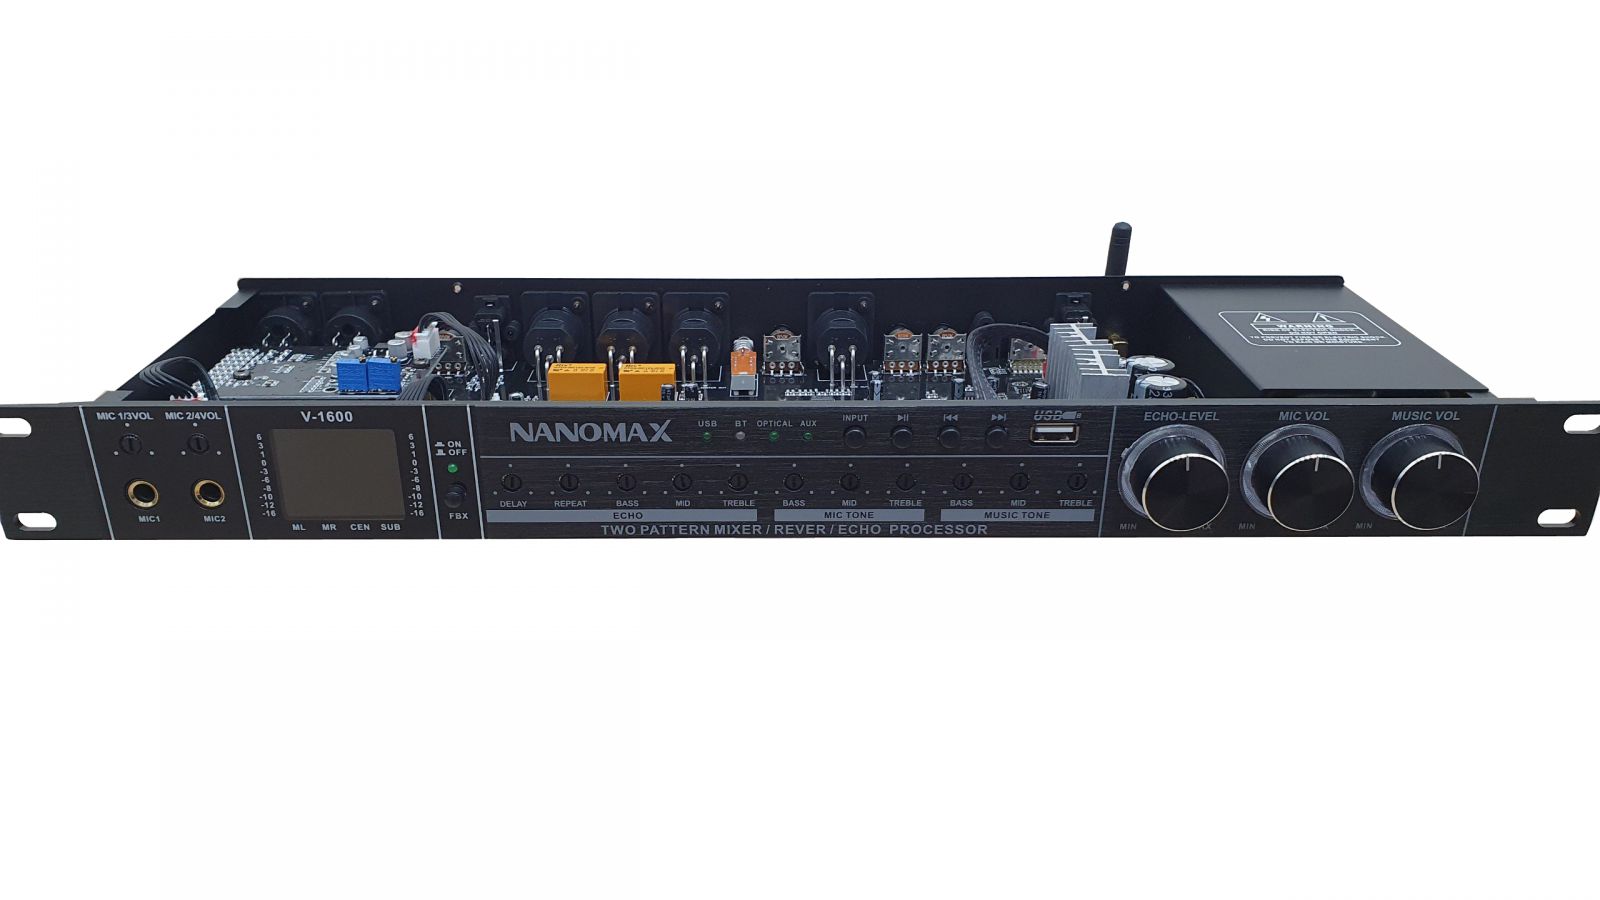 VANG CƠ NANOMAX V-1600